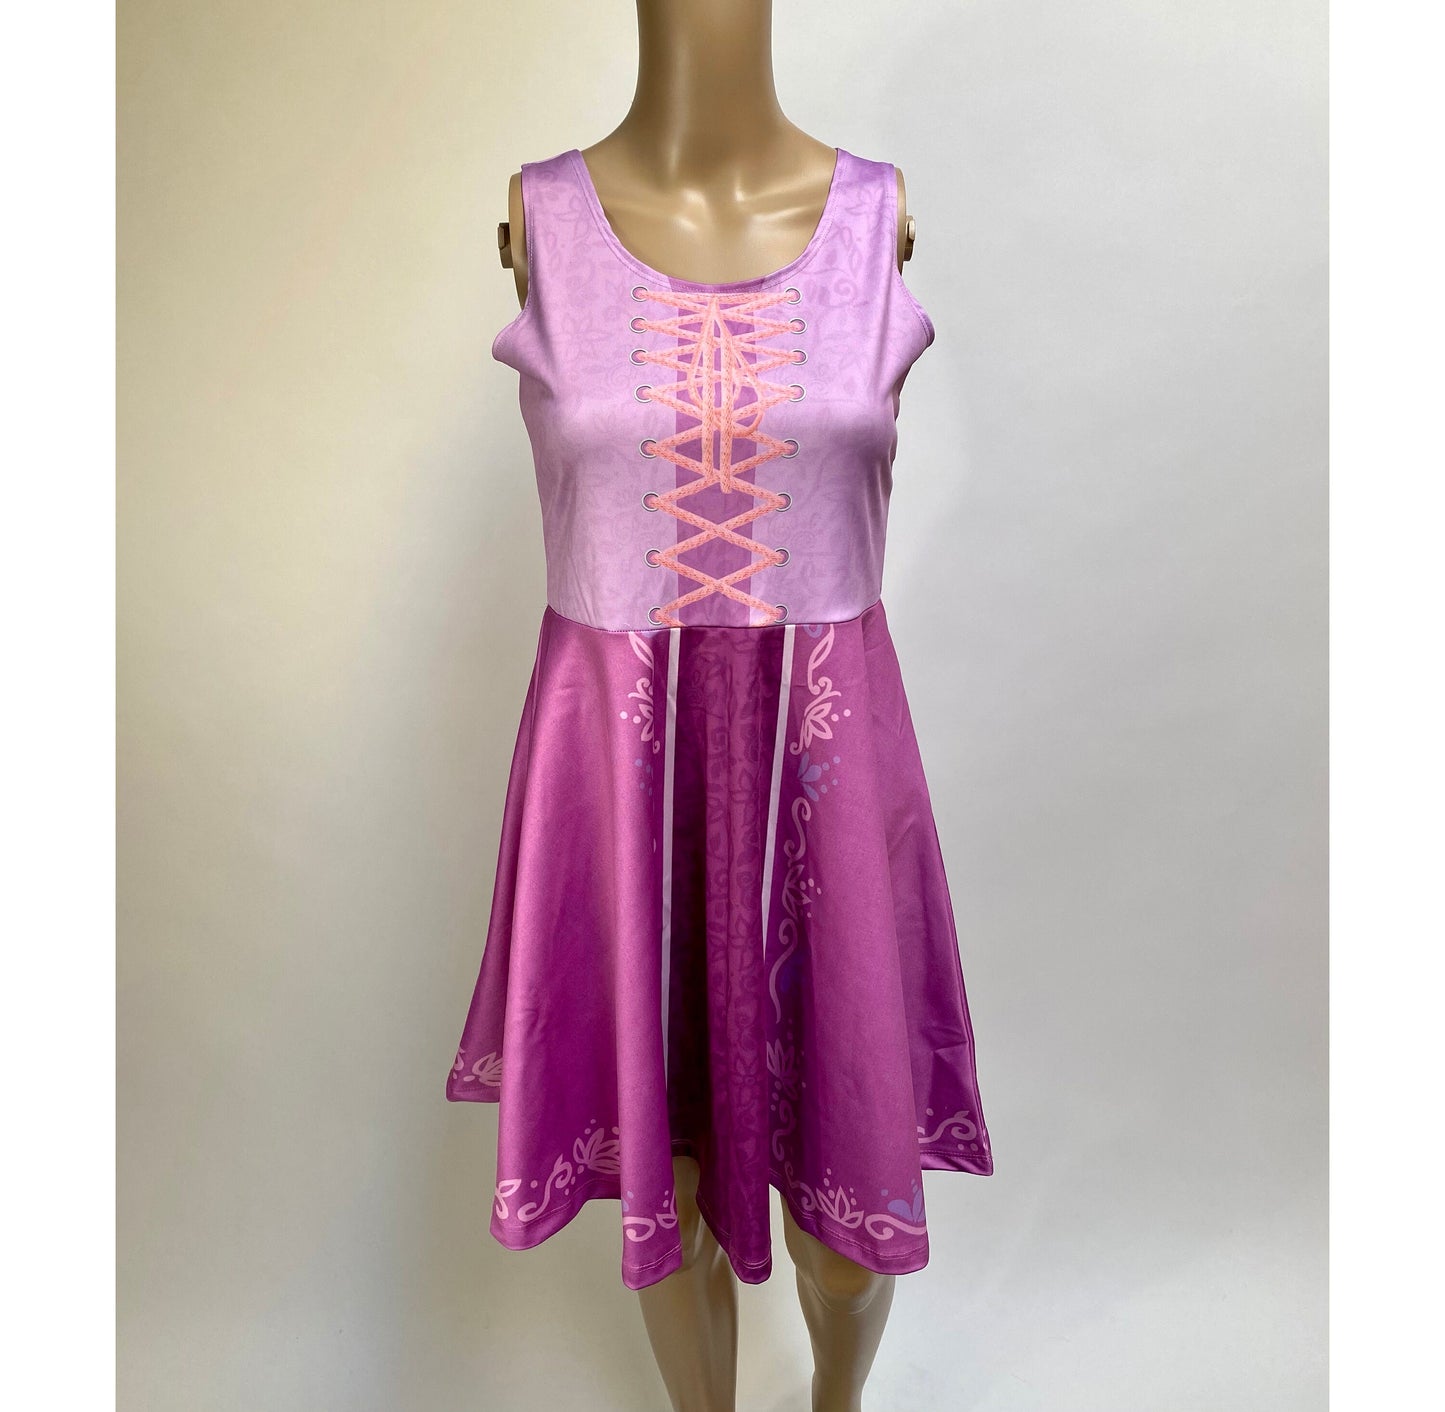 RUSH ORDER: Rapunzel Tangled Inspired Skater Dress